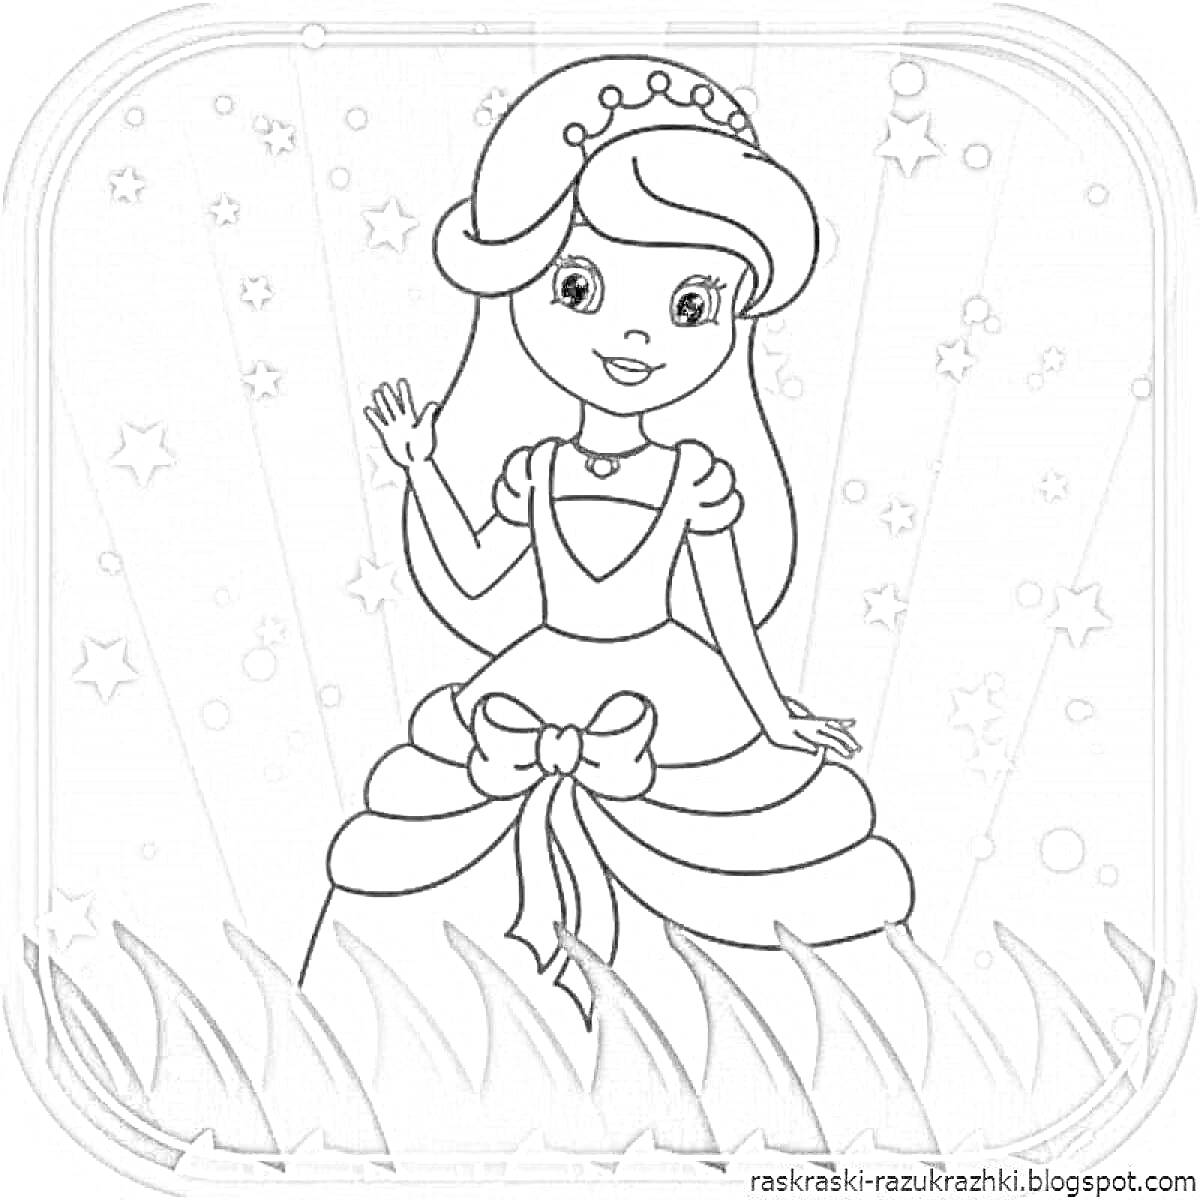 Раскраска Принцесса в платье с бантом и короной, стоящая на траве, на фоне звезд и лучей